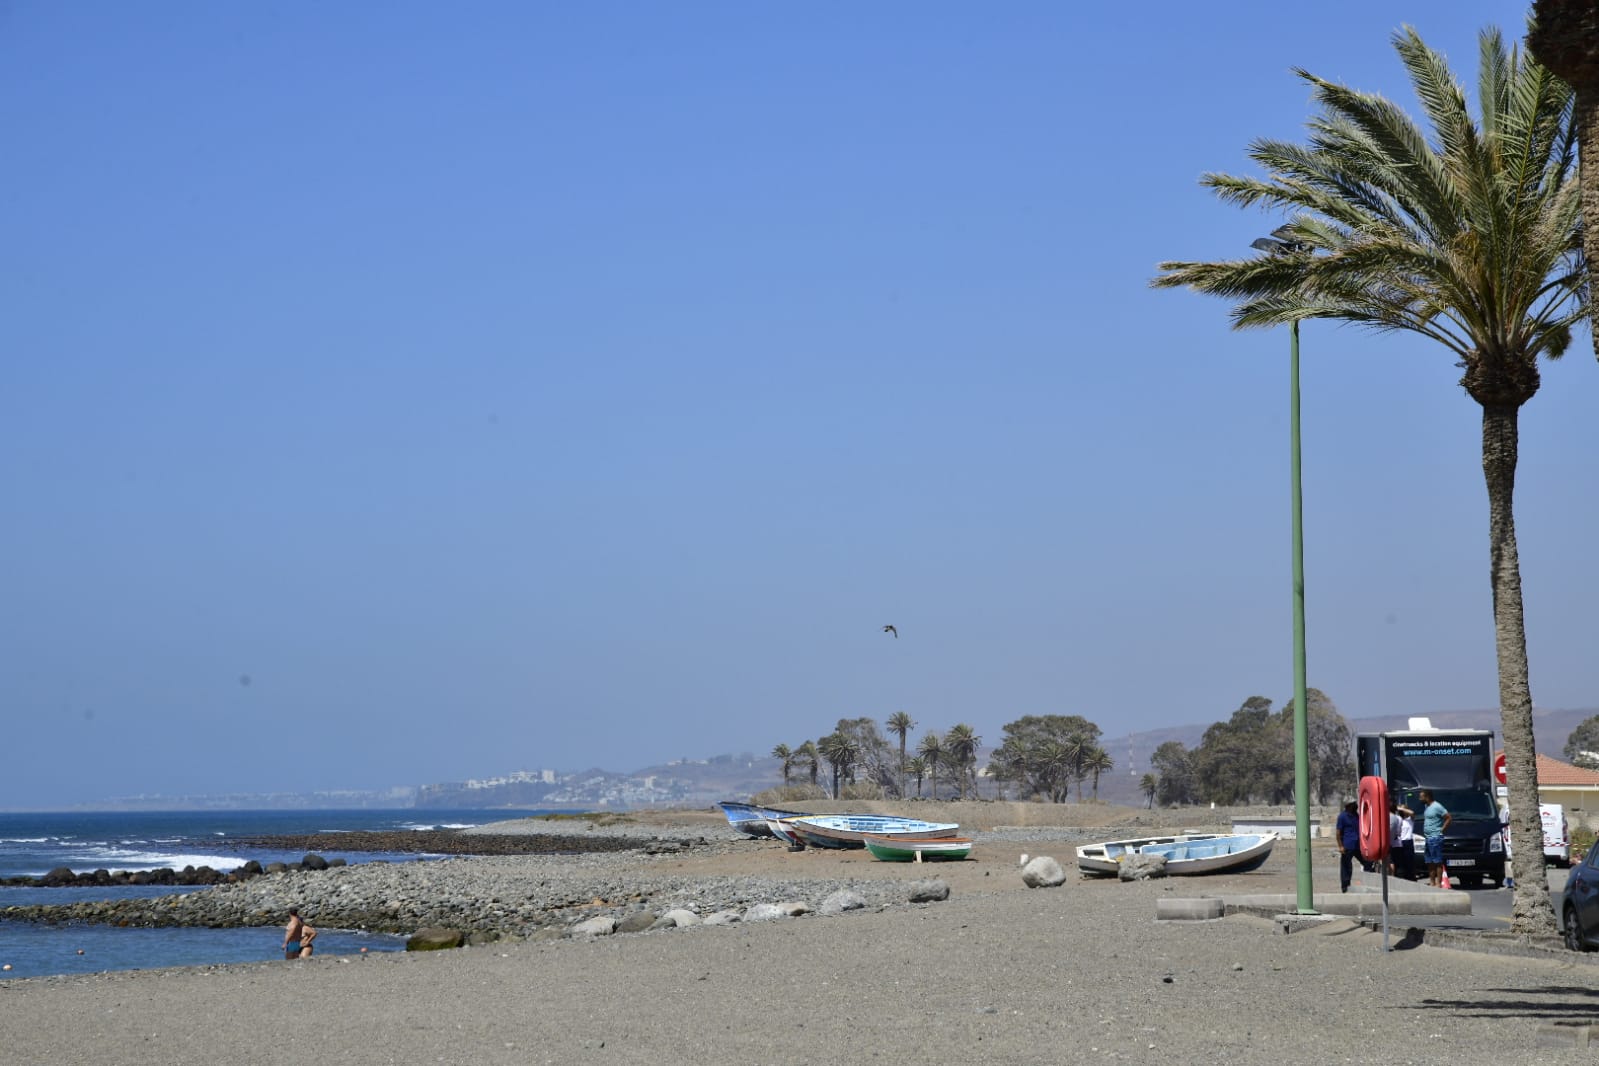 Fotos: El calor seguirá apretando con fuerza en Canarias hasta mañana